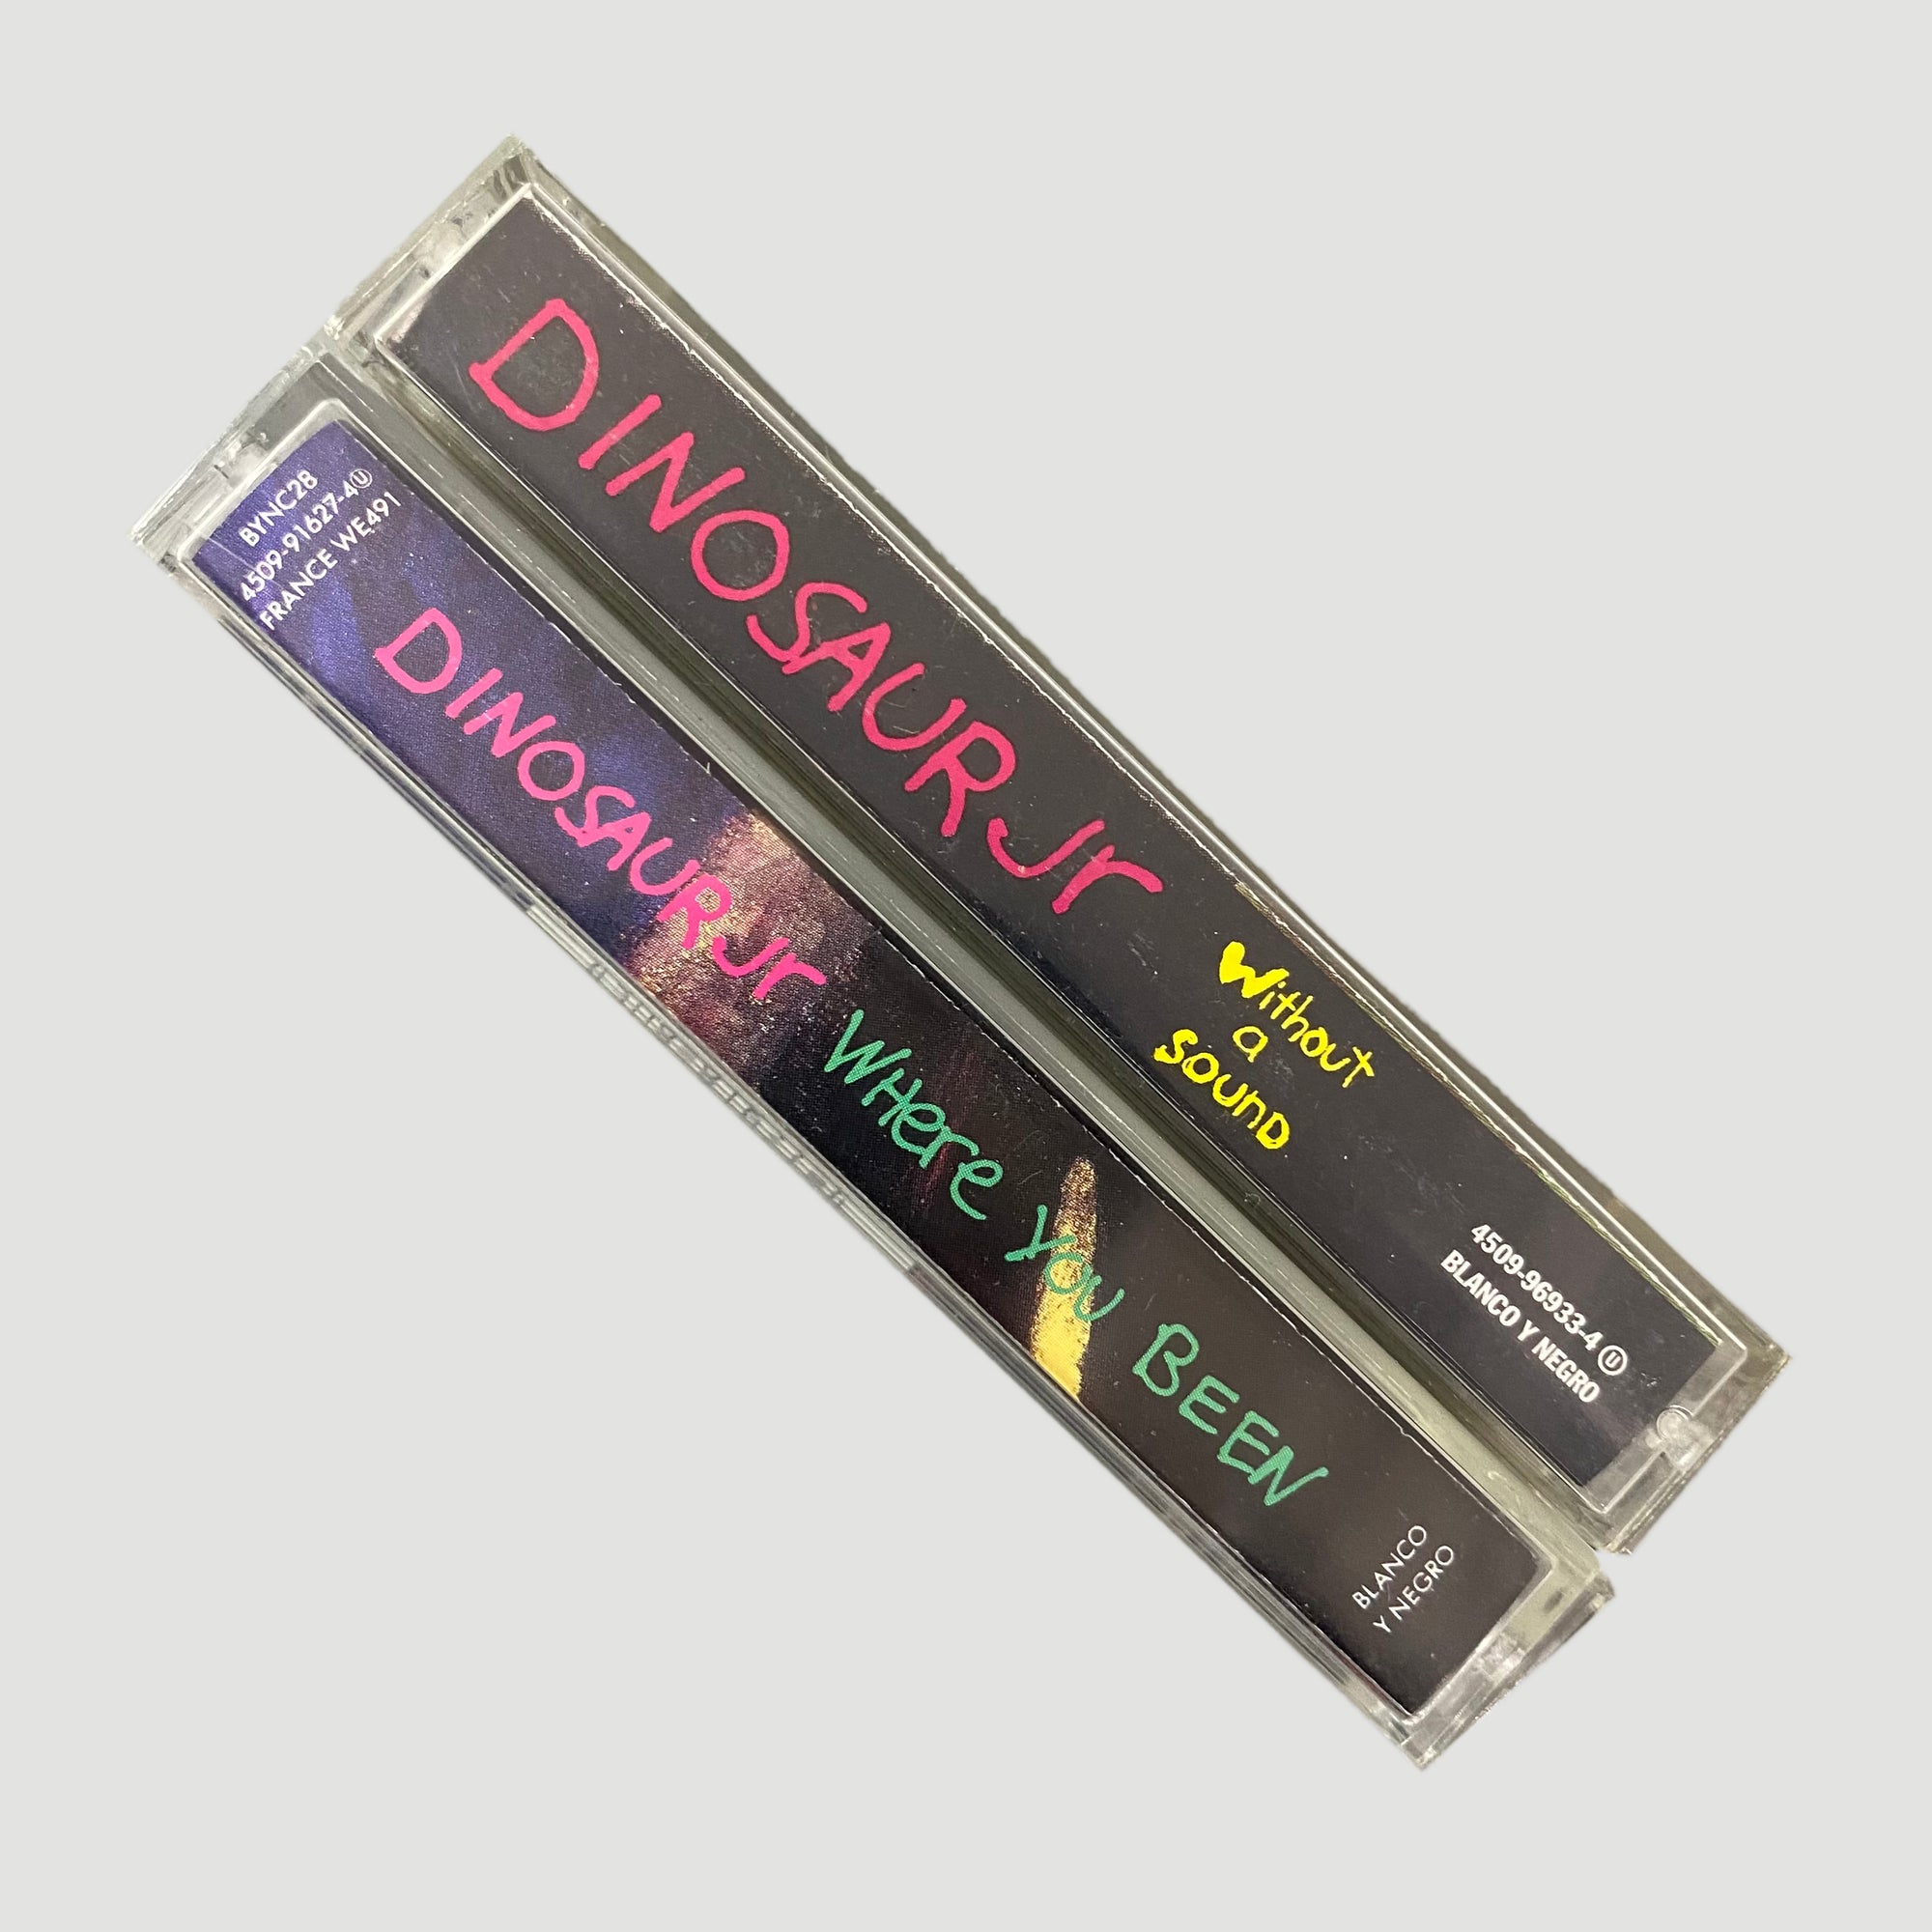 Mid 90's Dinosaur Jr 2 Cassette Set